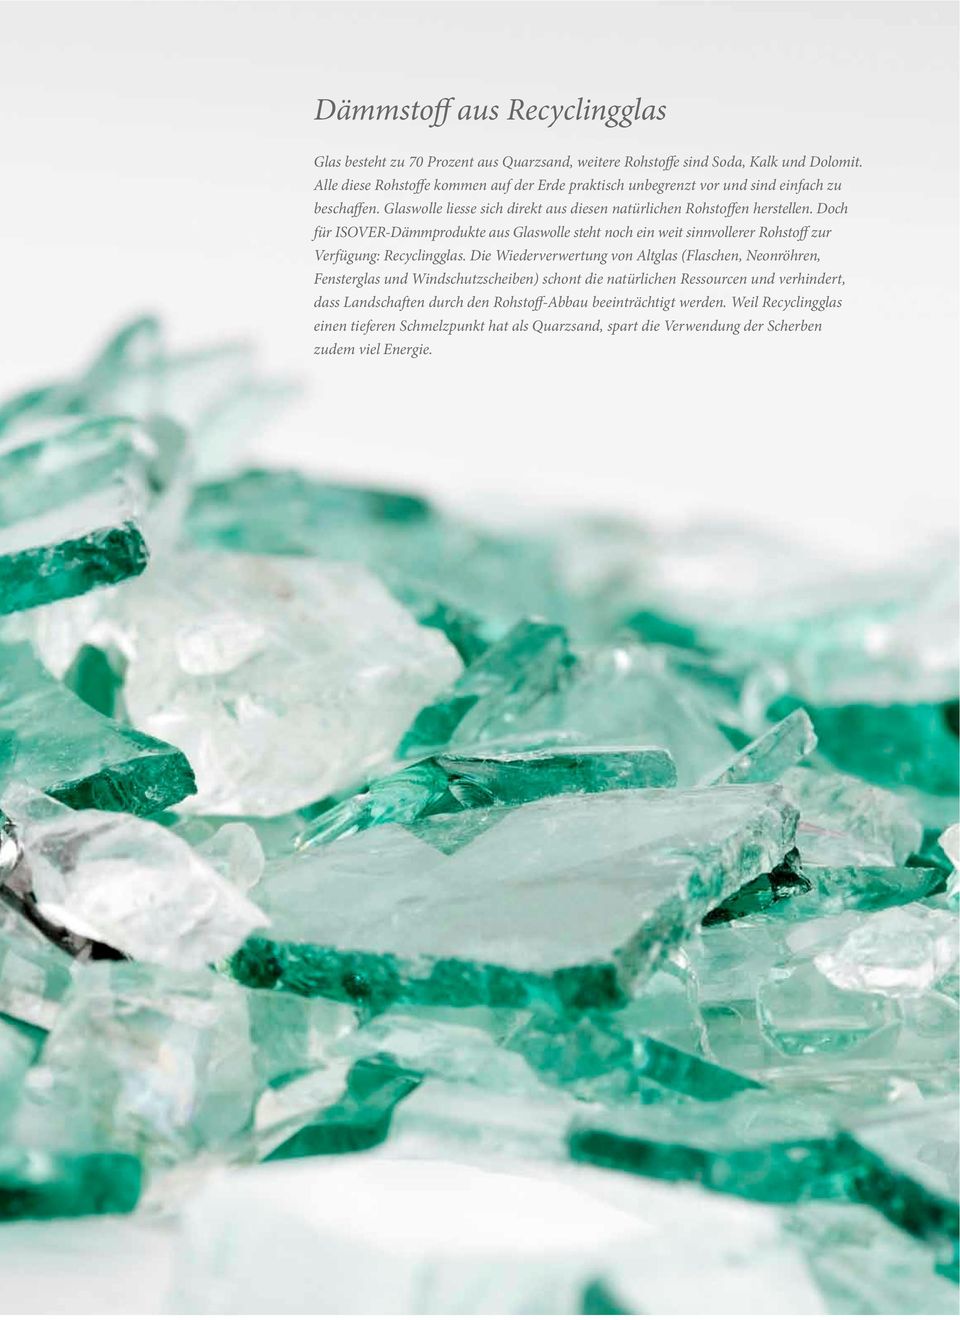 Doch für ISOVER-Dämmprodukte aus Glaswolle steht noch ein weit sinnvollerer Rohstoff zur Verfügung: Recyclingglas.